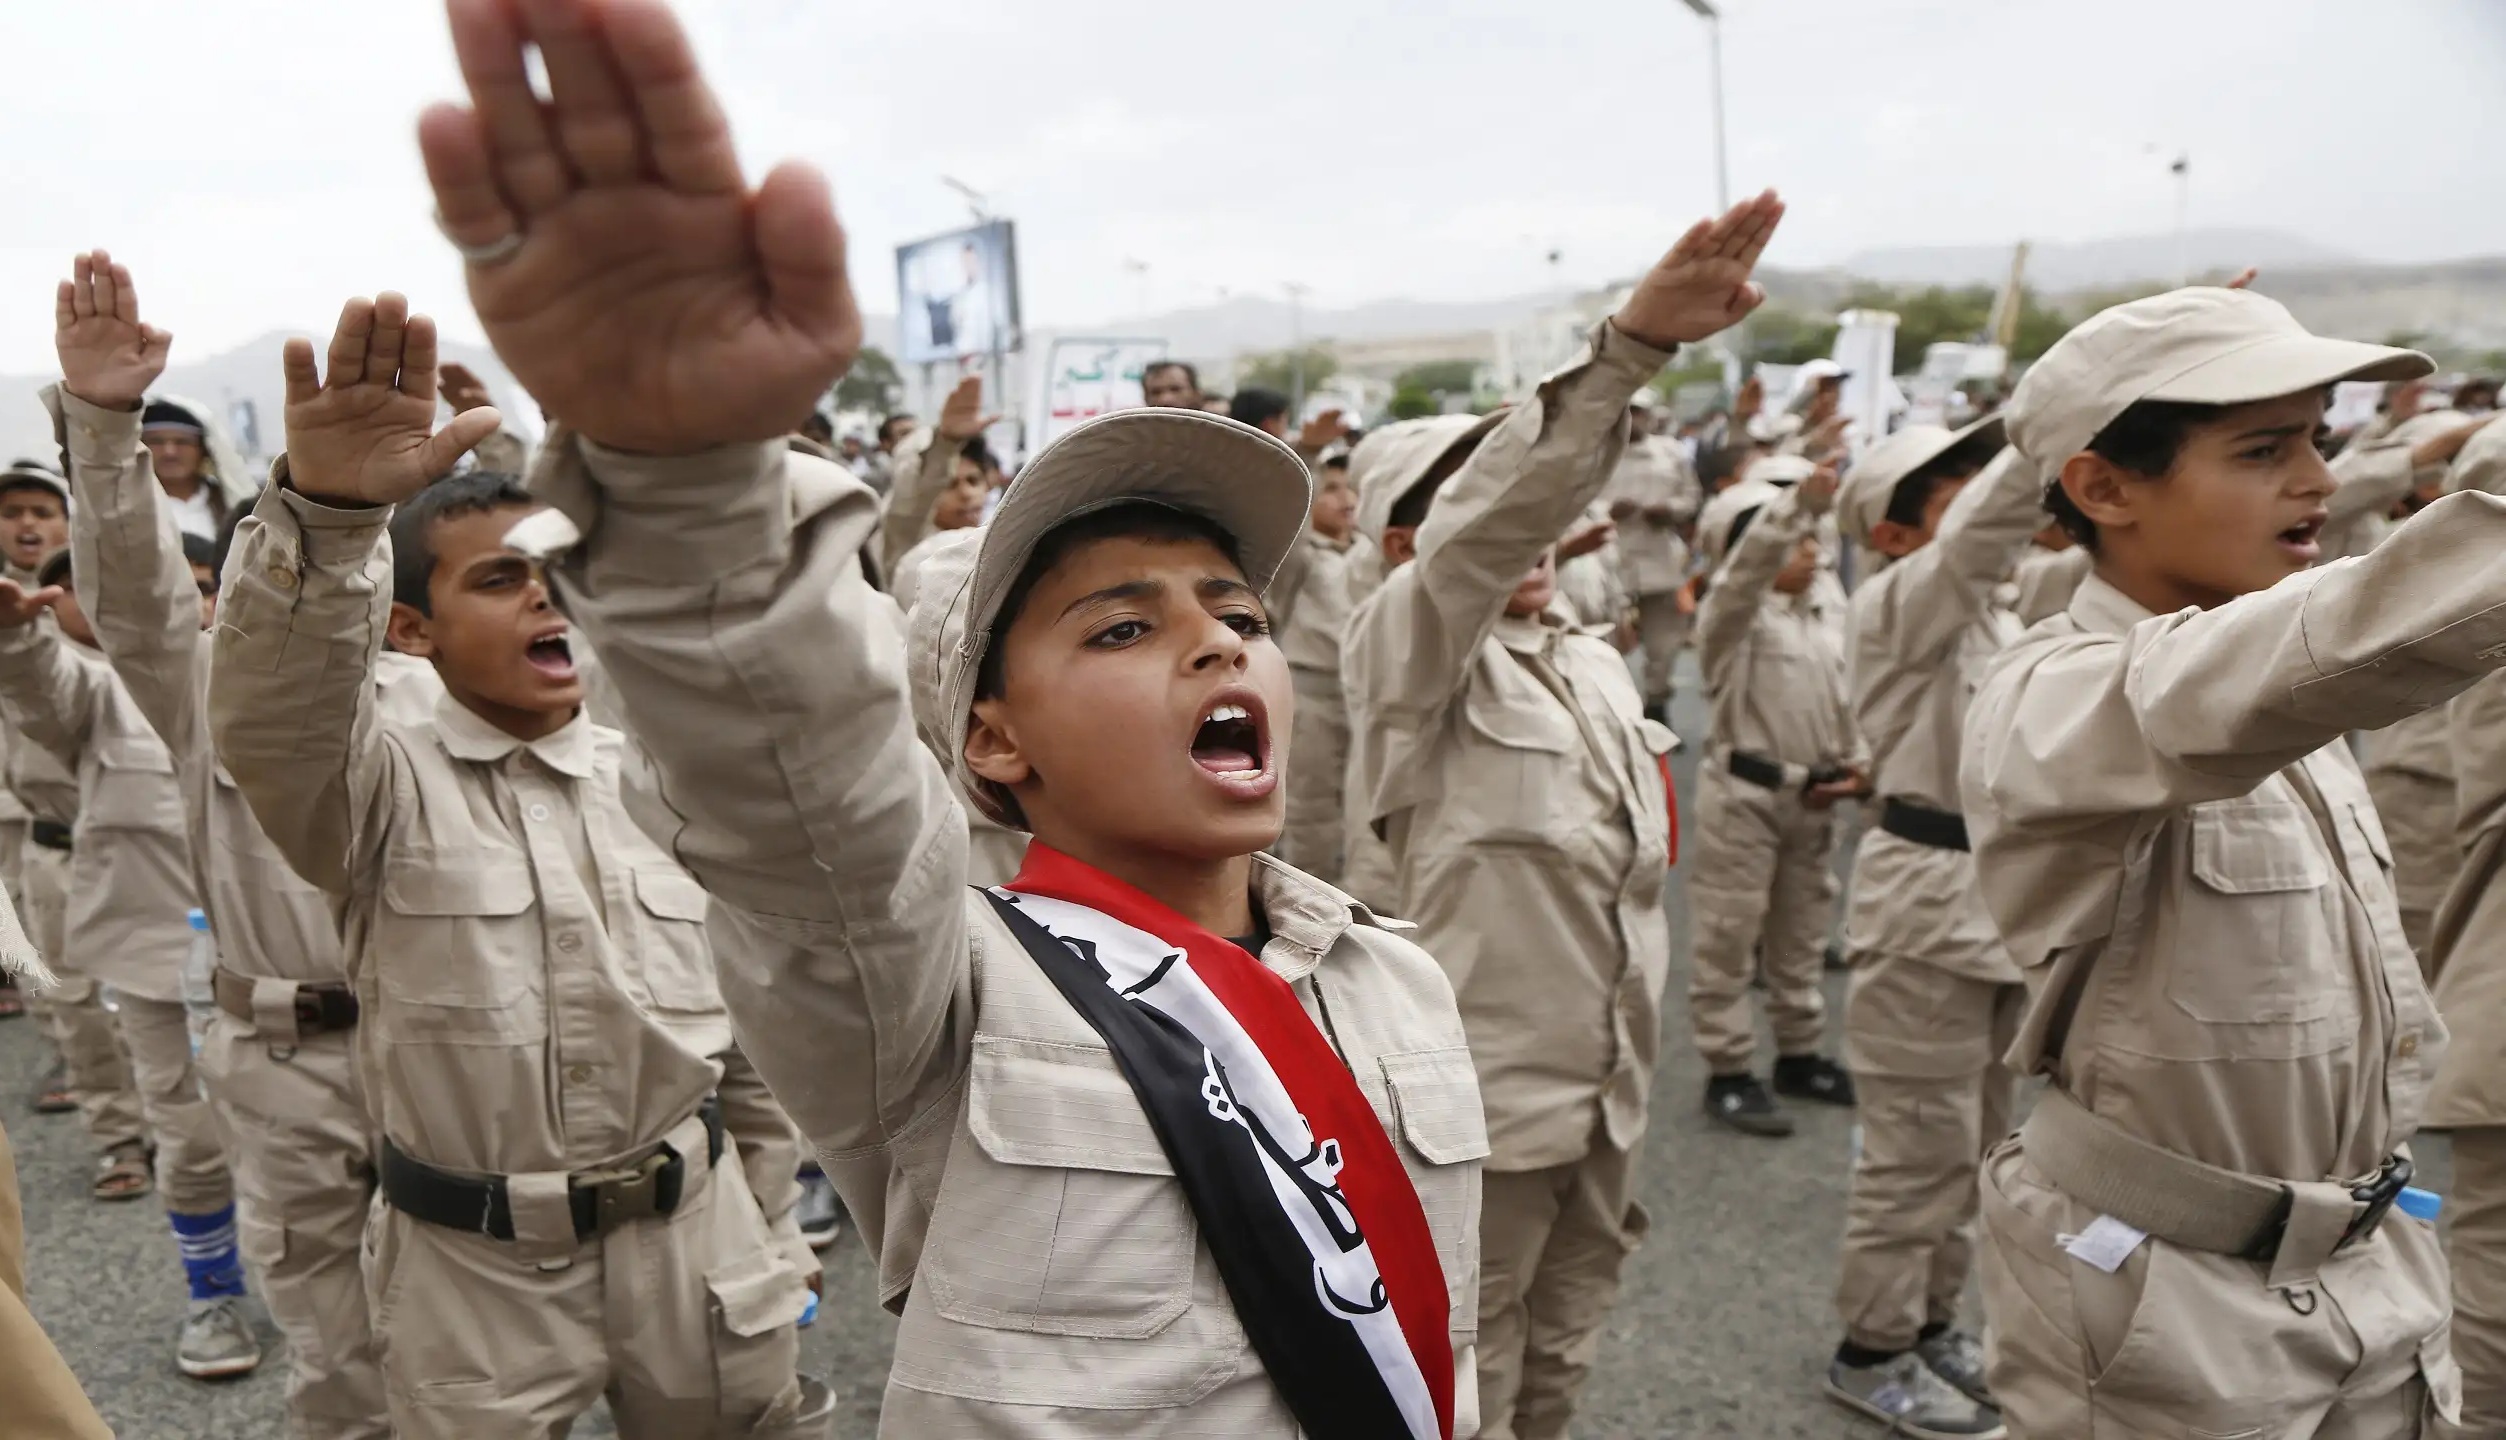 تقرير أمريكي يقول إن أكثر من مليون طفل يمني يواجهون “التلقين العقائدي” في مخيمات الحوثيين الصيفية